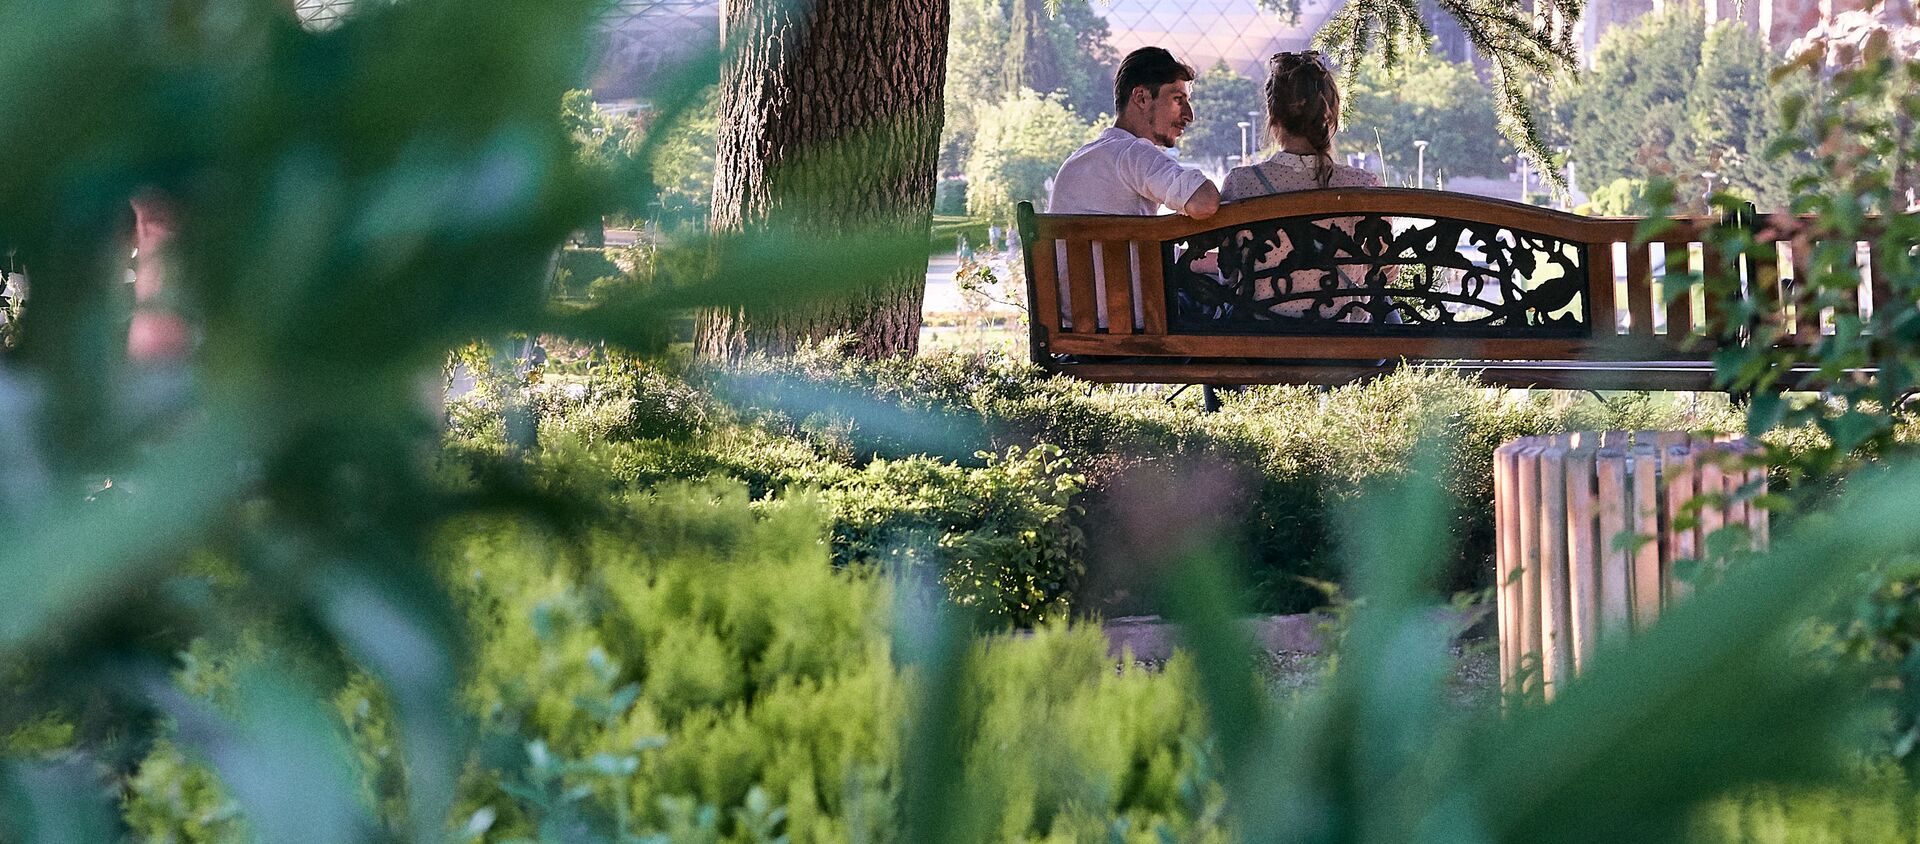 Молодая пара в парке на скамейке обсуждает личные вопросы - Sputnik Грузия, 1920, 26.02.2021